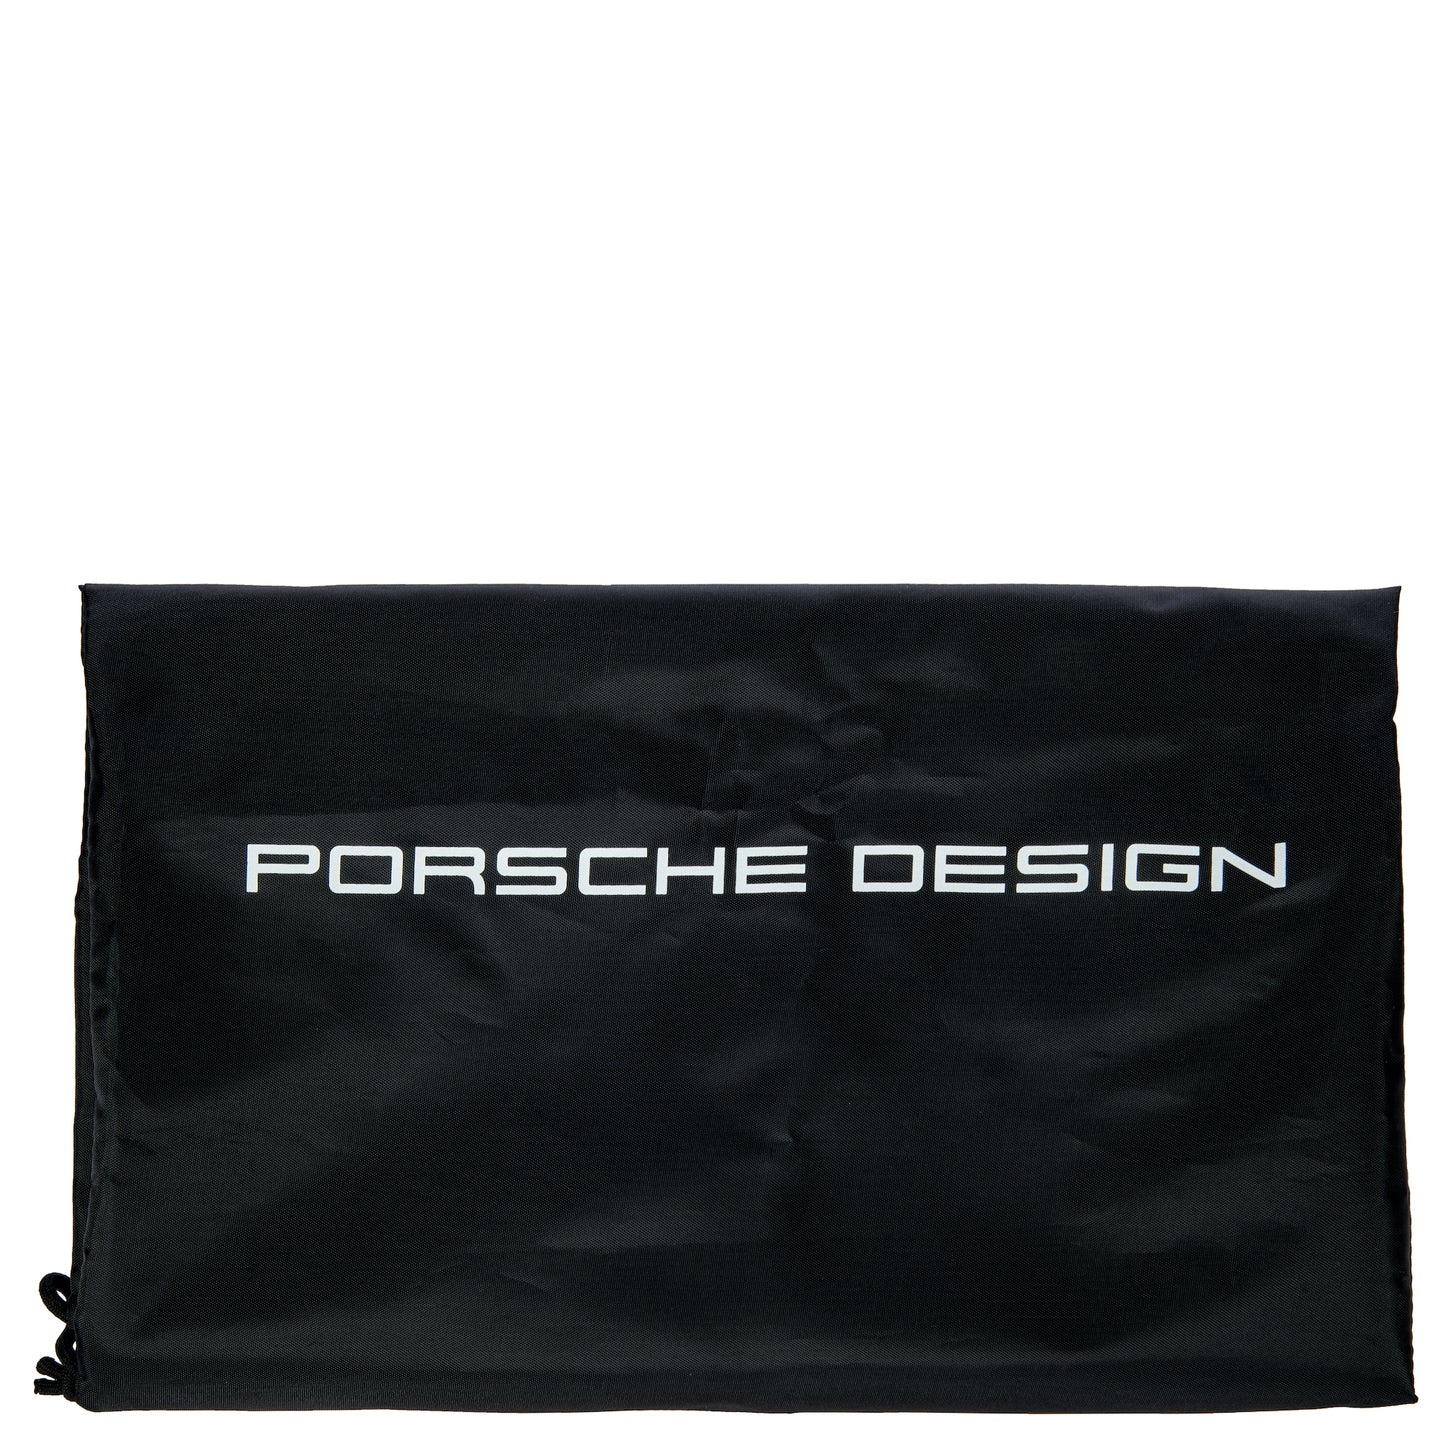 PORSCHE DESIGN - Urban Eco pouch